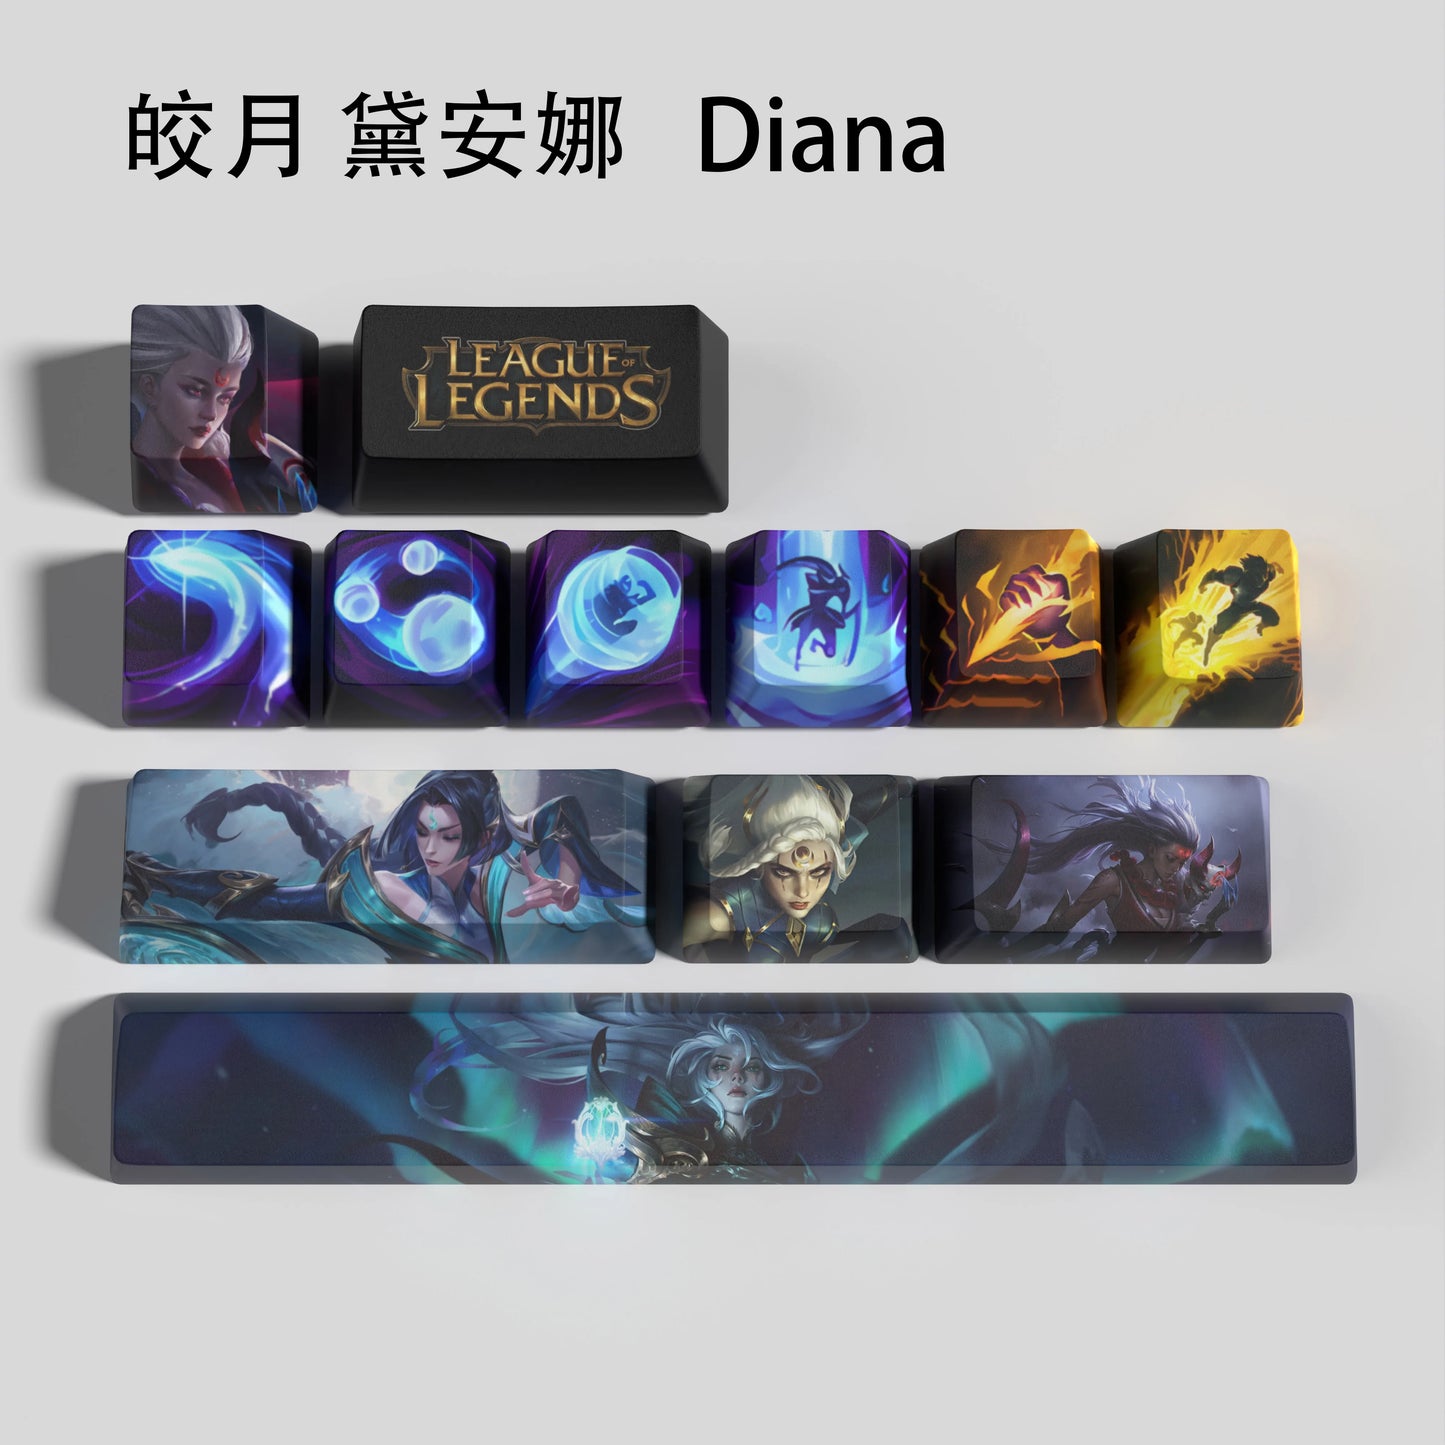 Diana keycaps